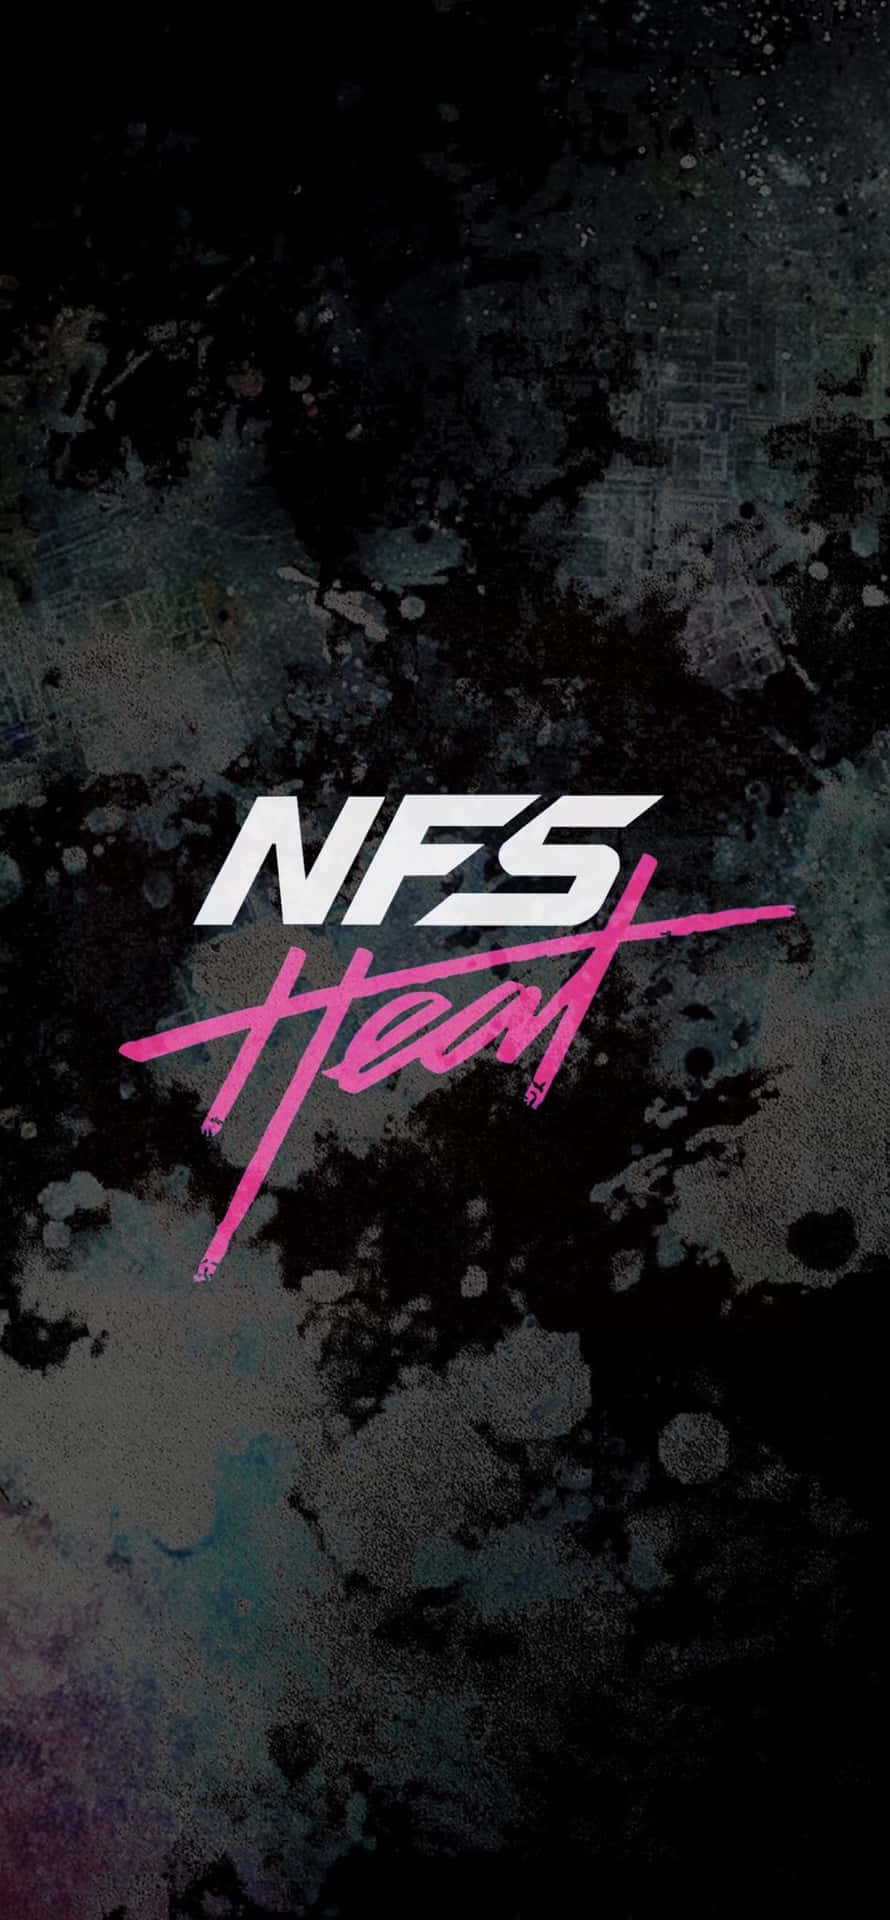 Nfs Heart - Wallpaper